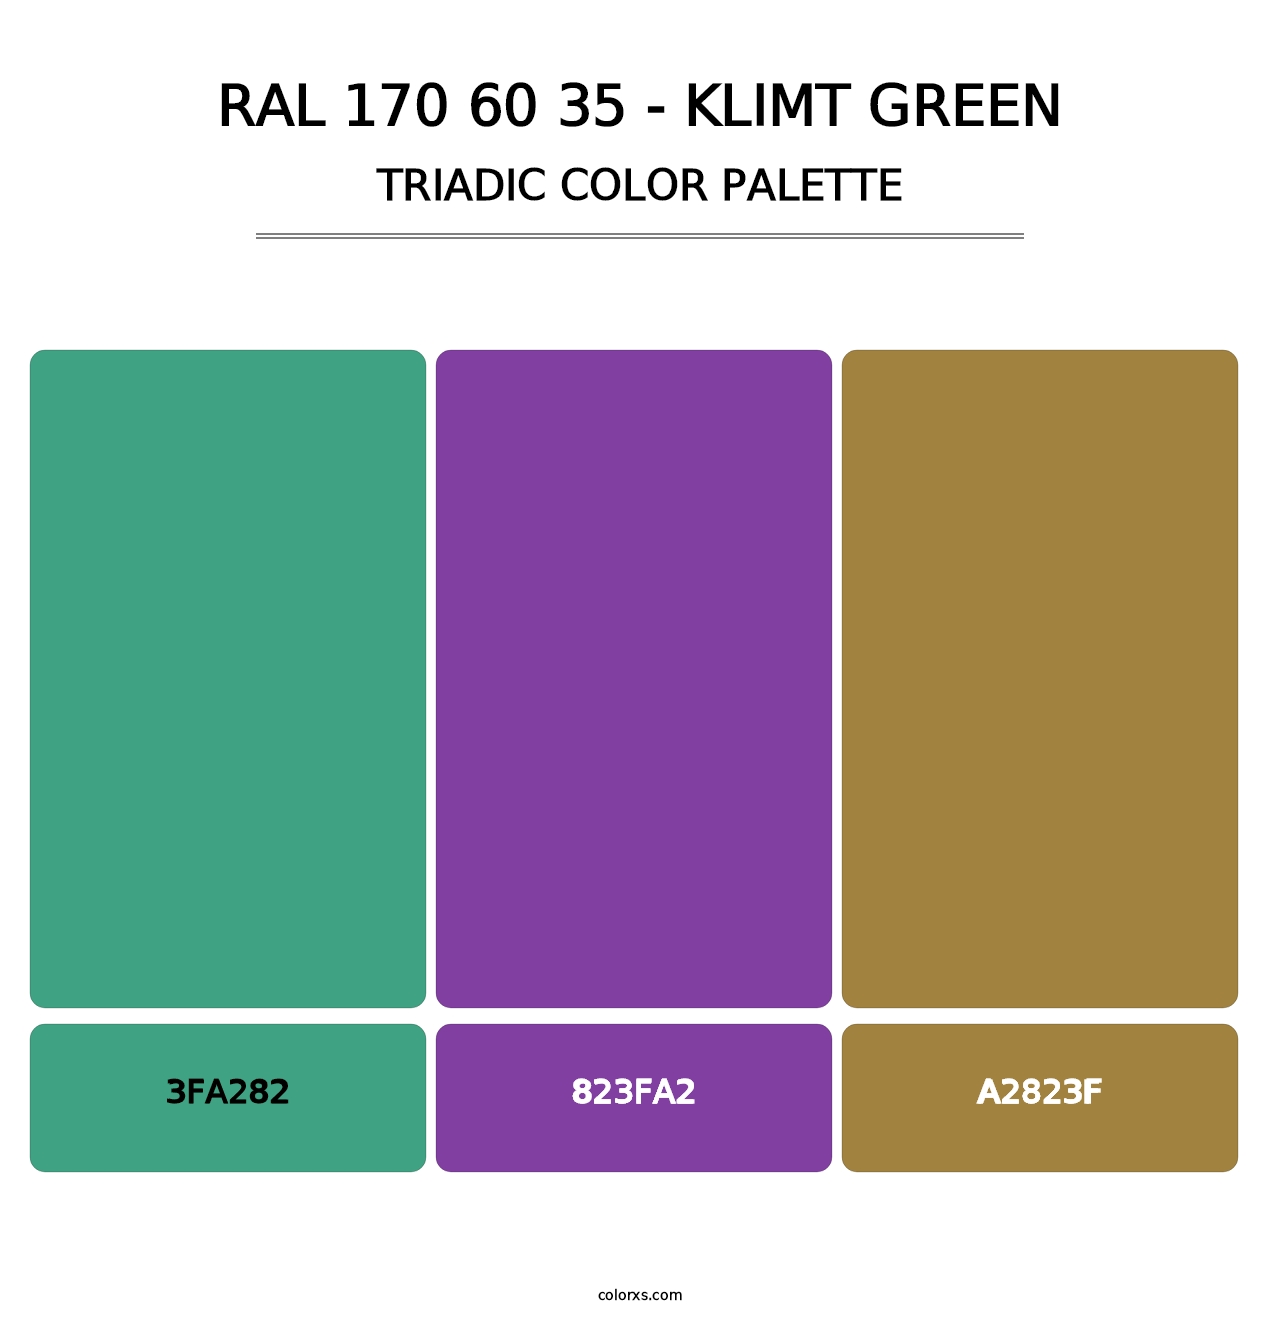 RAL 170 60 35 - Klimt Green - Triadic Color Palette